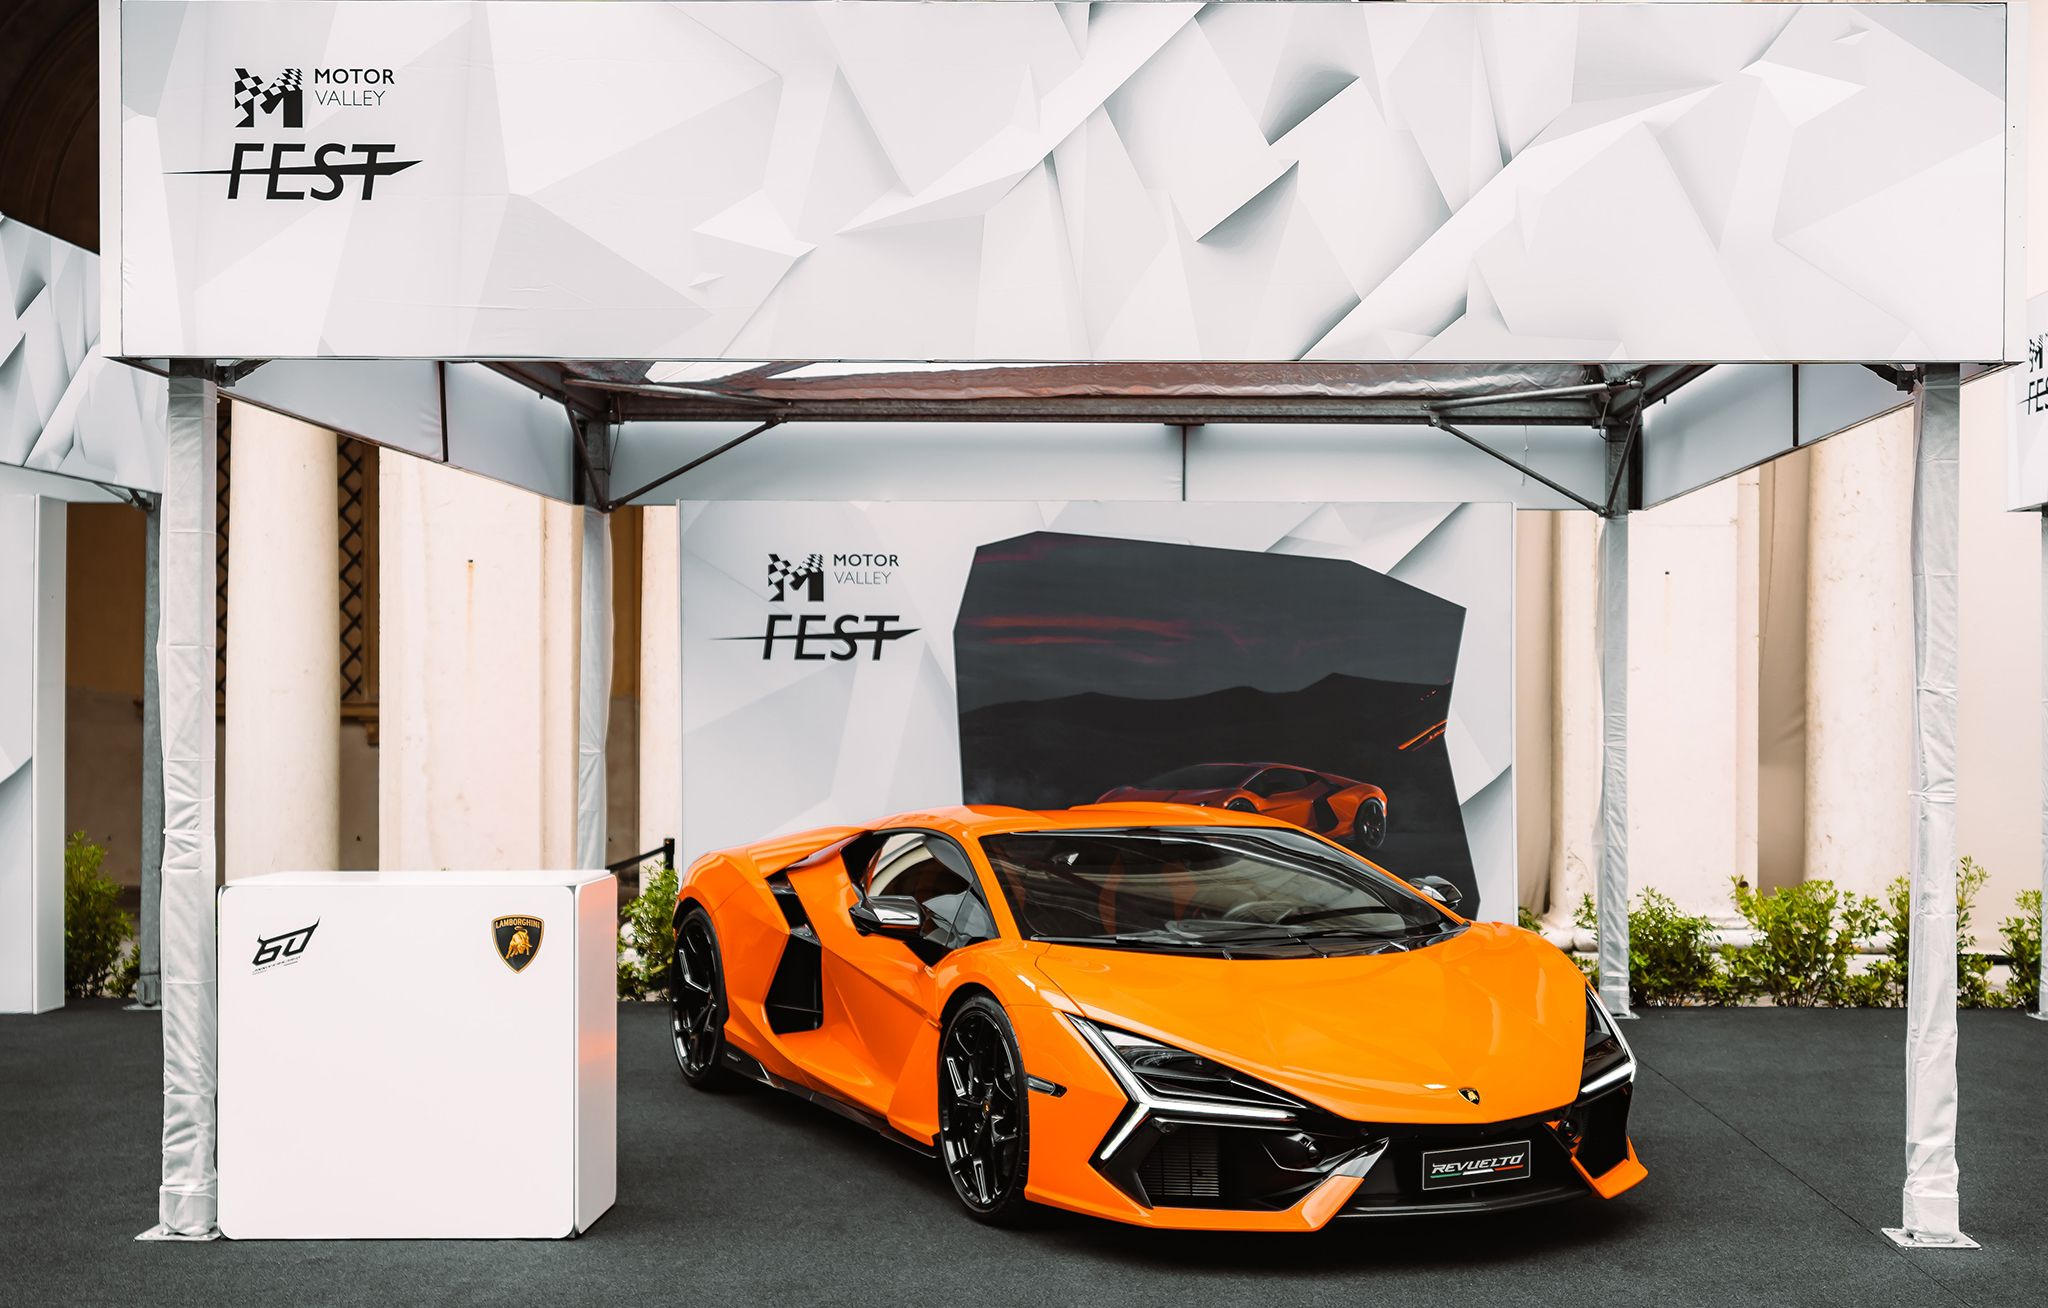 Automobili Lamborghini in the spotlight - at Motor Valley Fest 2023